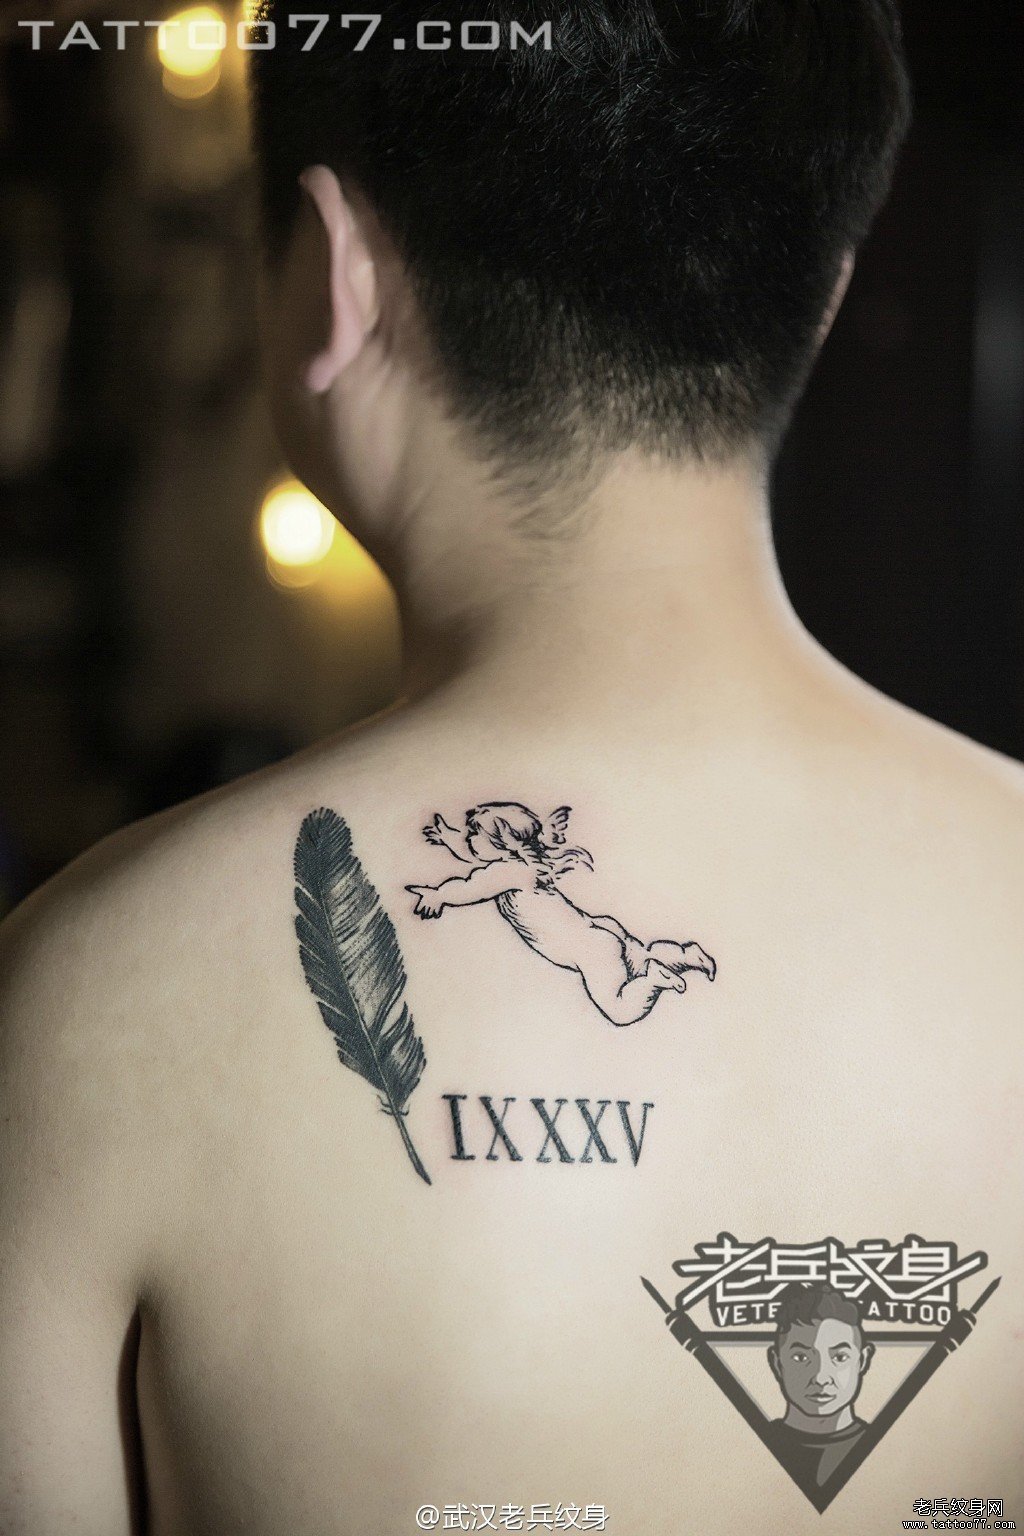 后背天使纹身图案作品由武汉纹身店打造